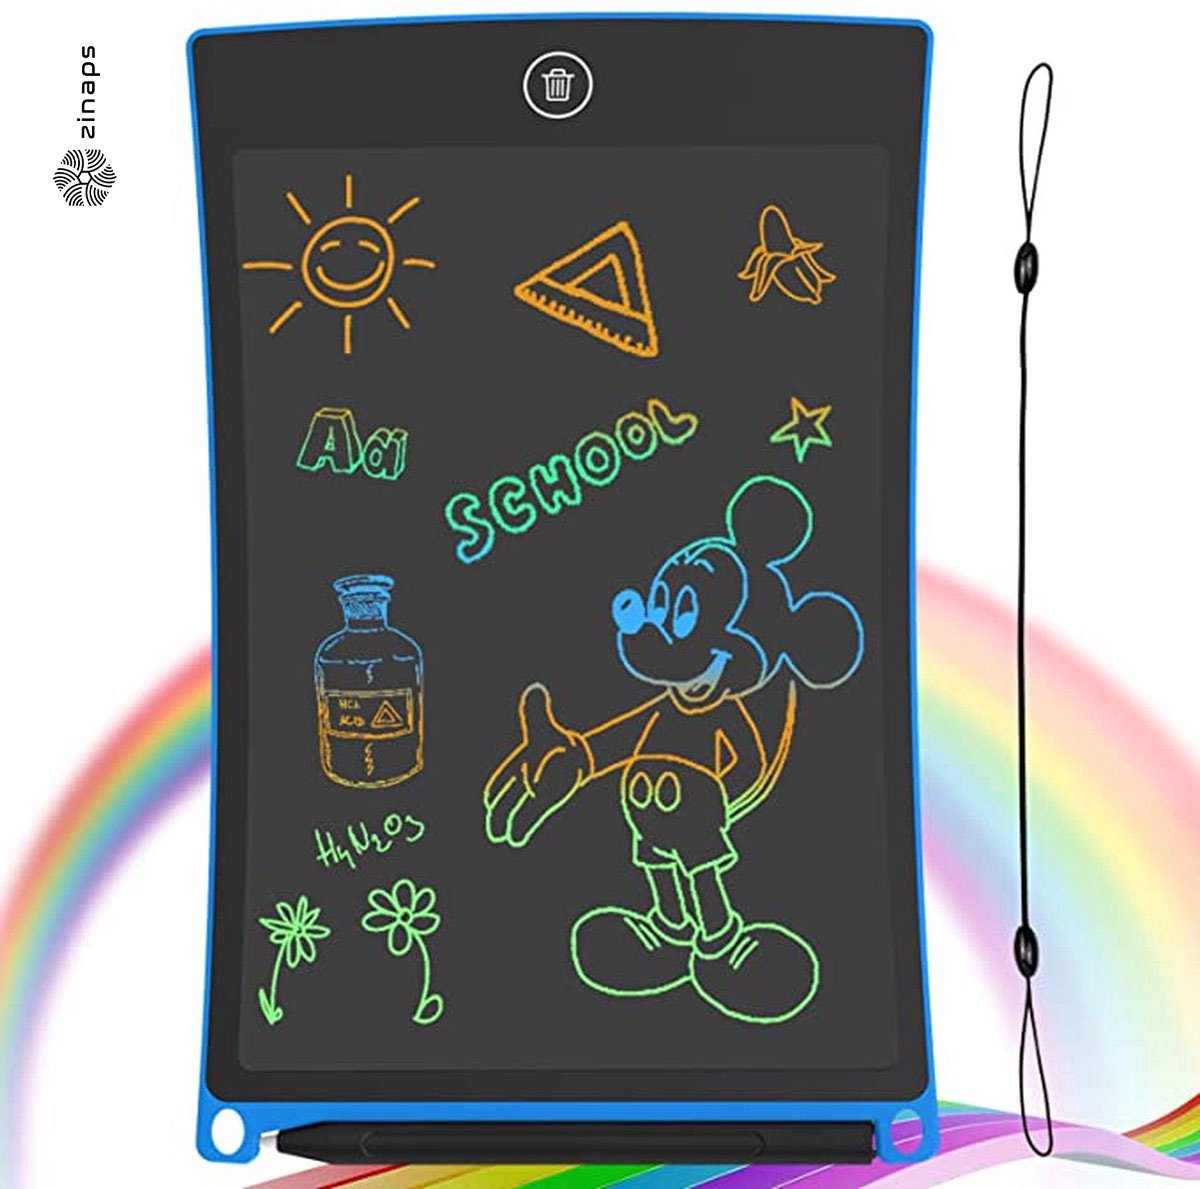 Tekentablet - Lcd-schrijfbord met kleurrijk scherm, 10 inch wisbaar tekenblok Doodle board, grafische tablet tekenbord met schakelslot, cadeau voor kinderen en volwassenen (10 inch, blauw)